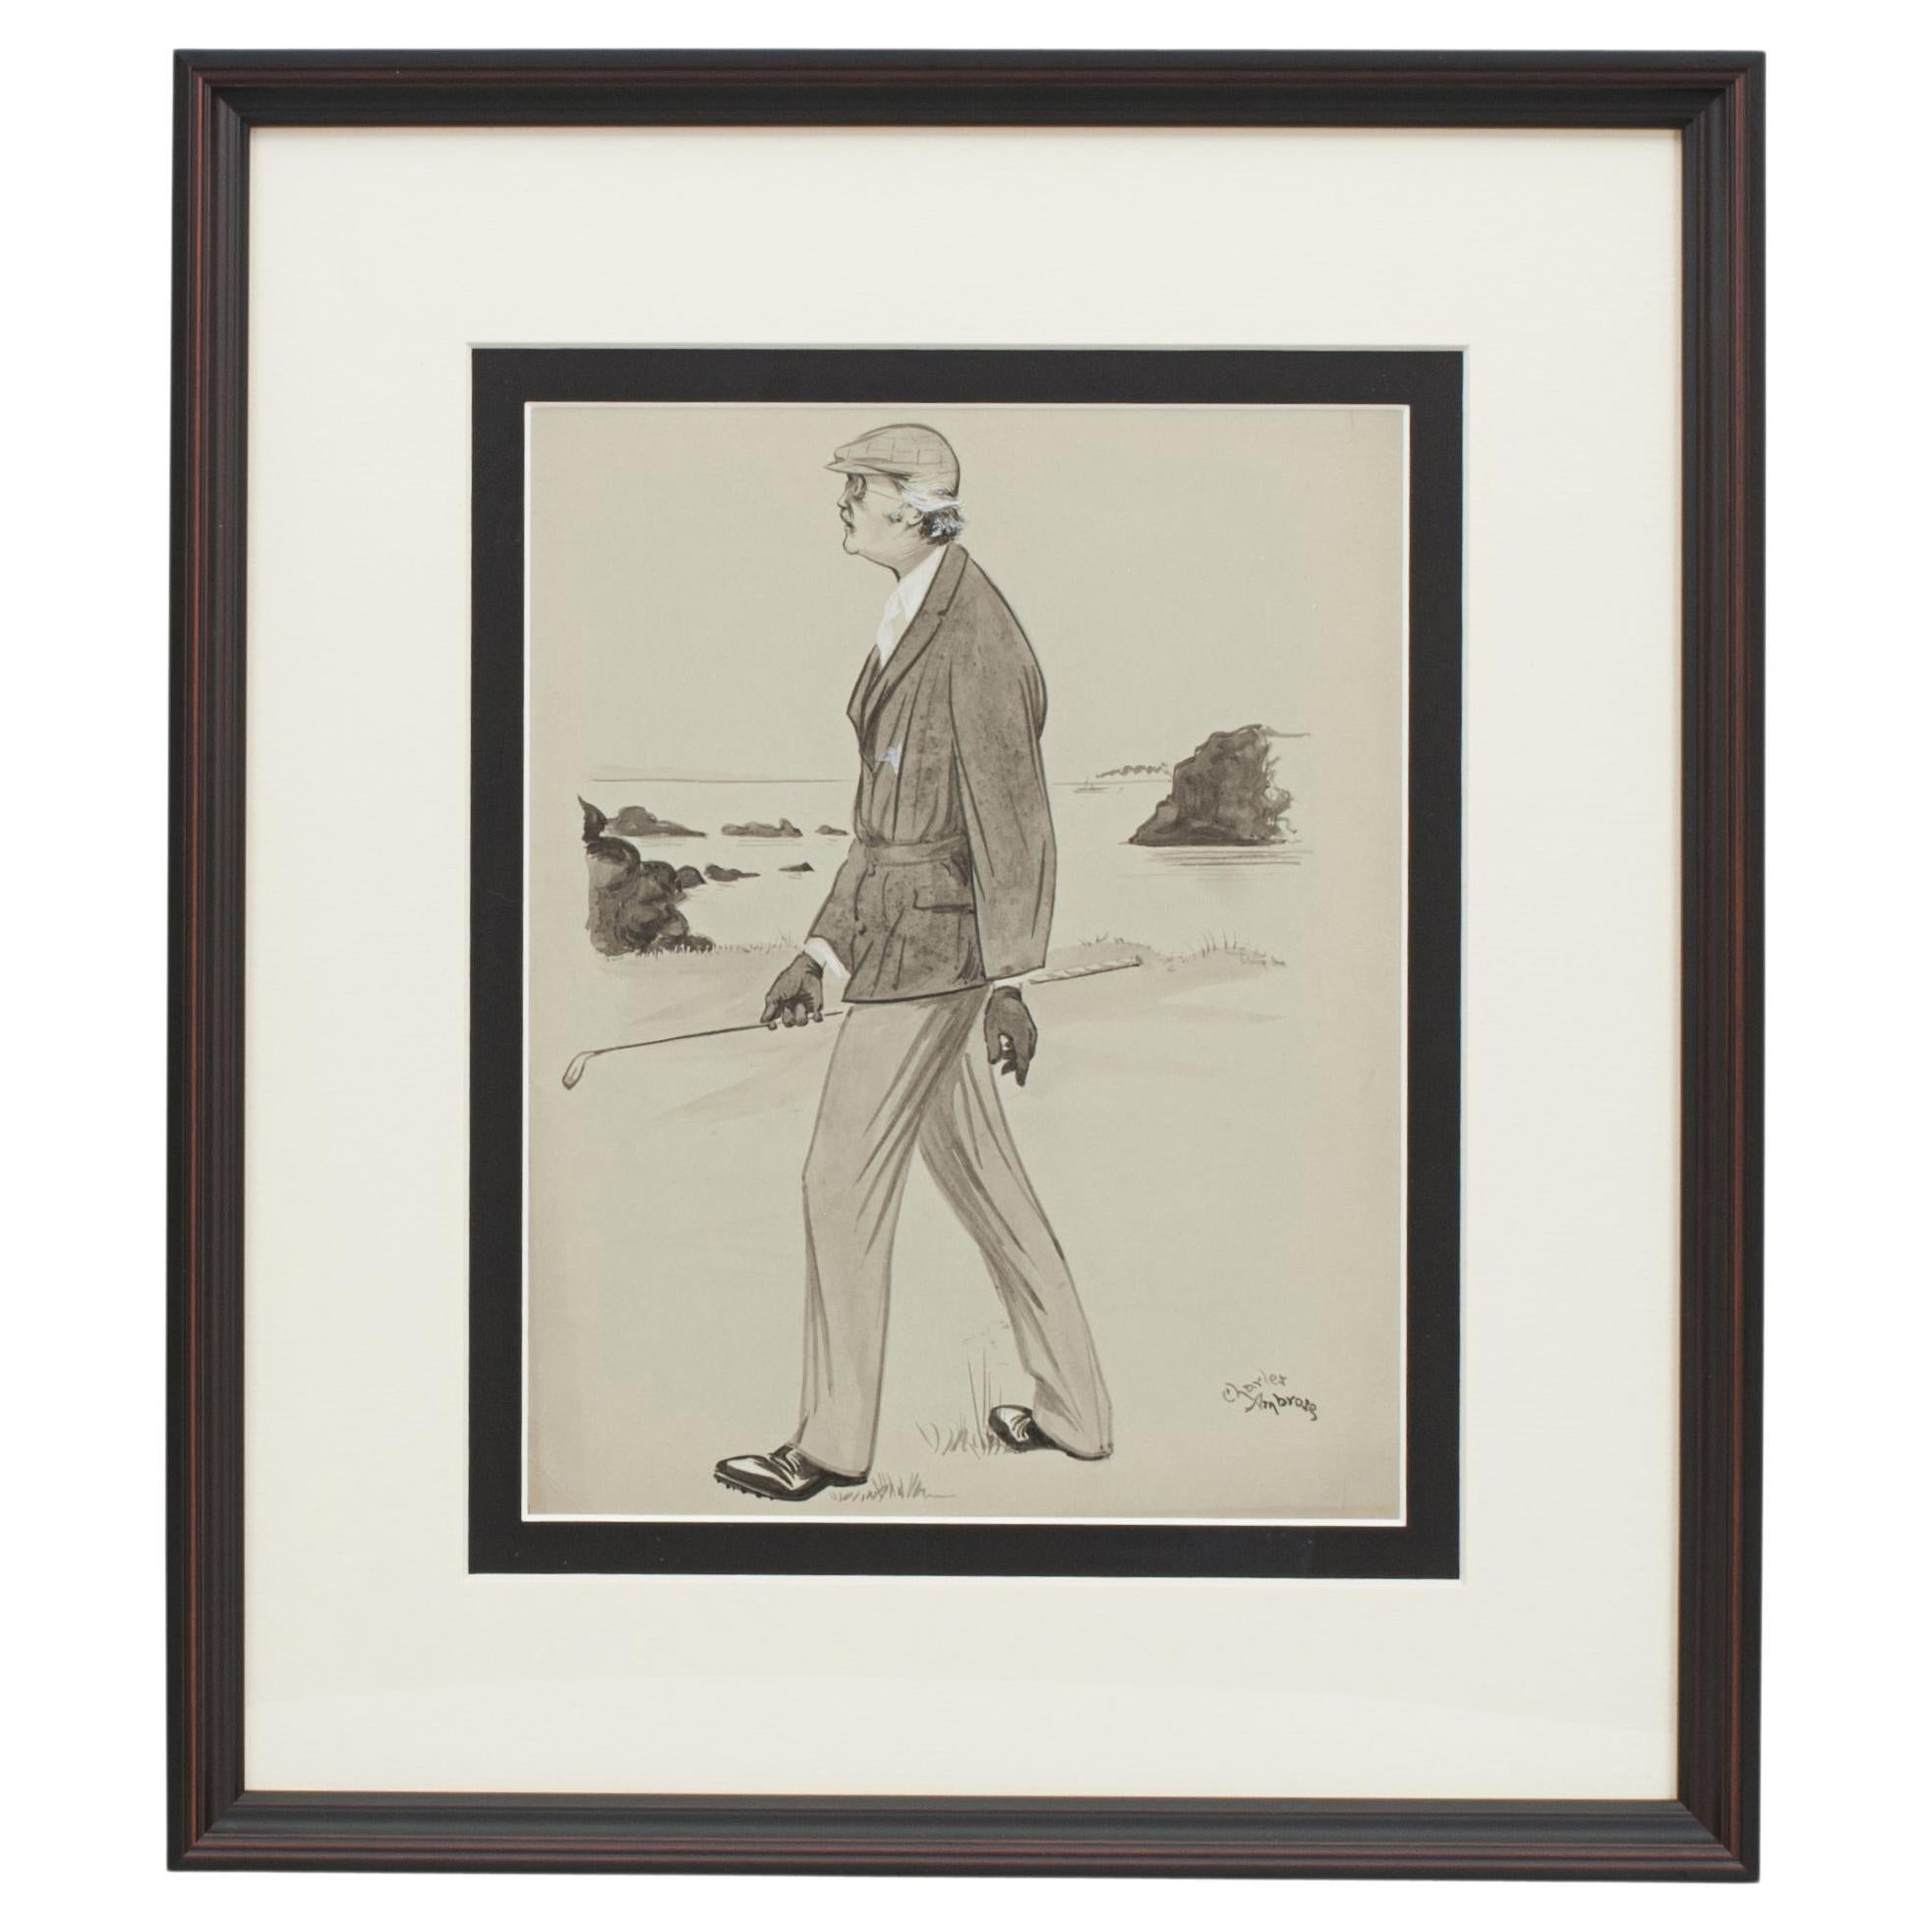 Golfgemälde von Charles Ambrose von Arthur Balfour, dem ehemaligen Premierminister.